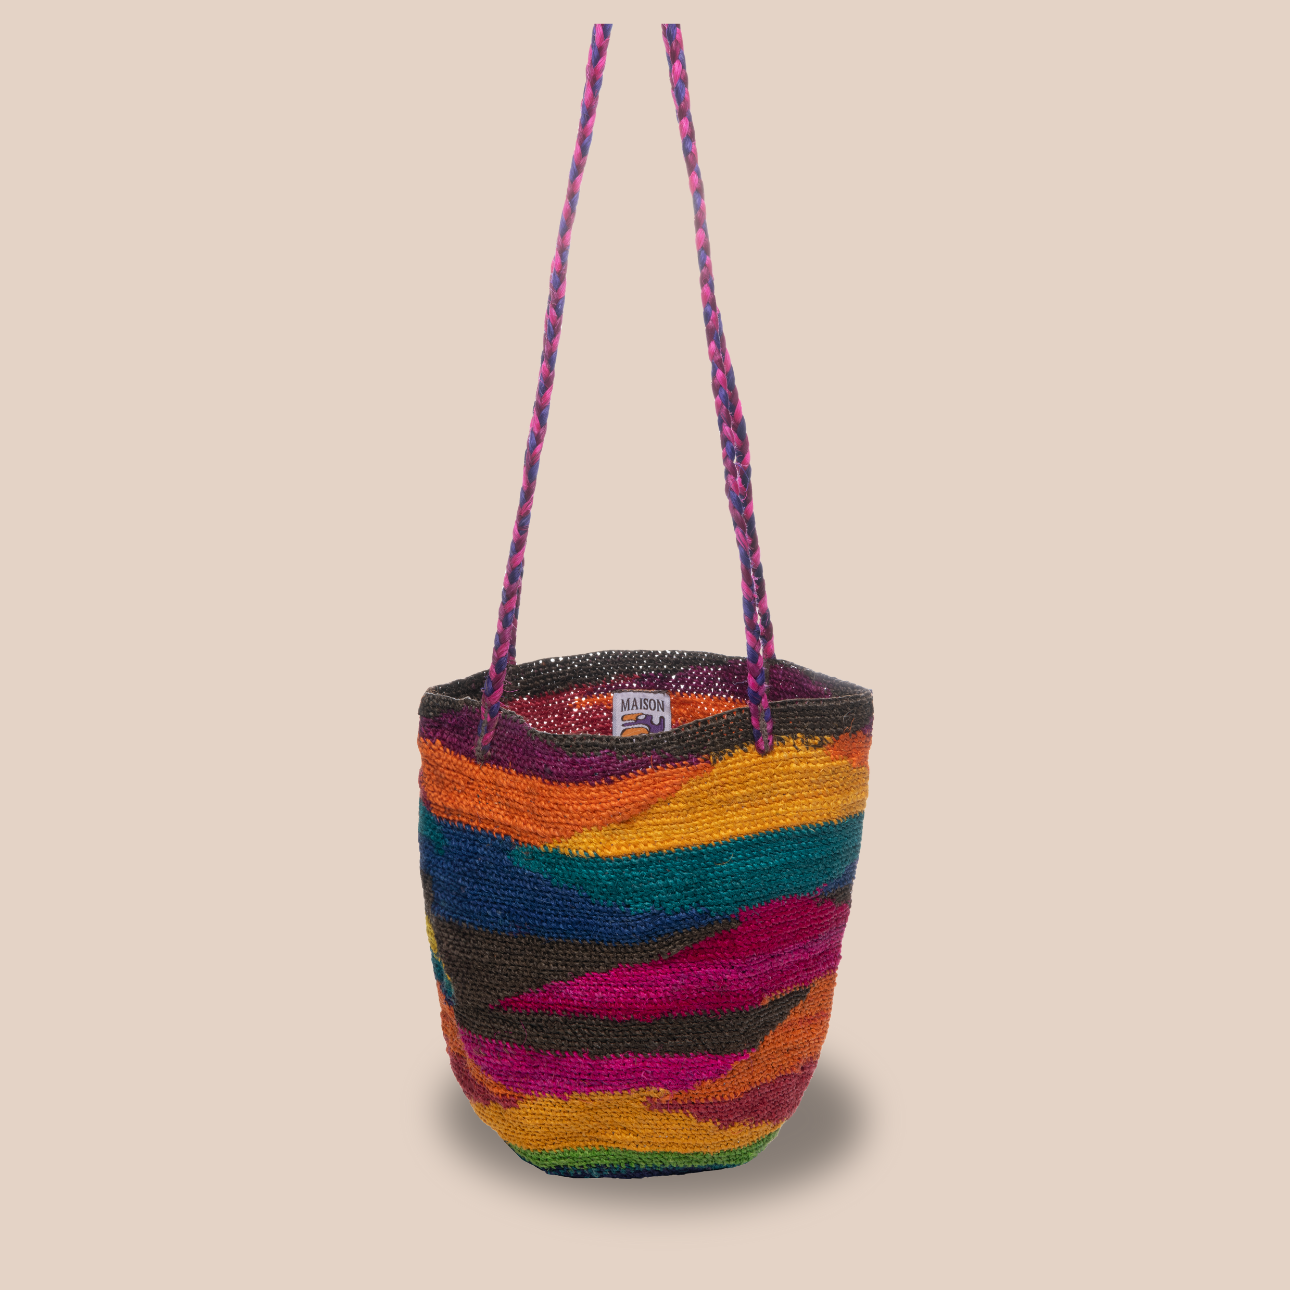 Un sac dolores en fibres de cactus, arborant des couleurs vives et audacieuses